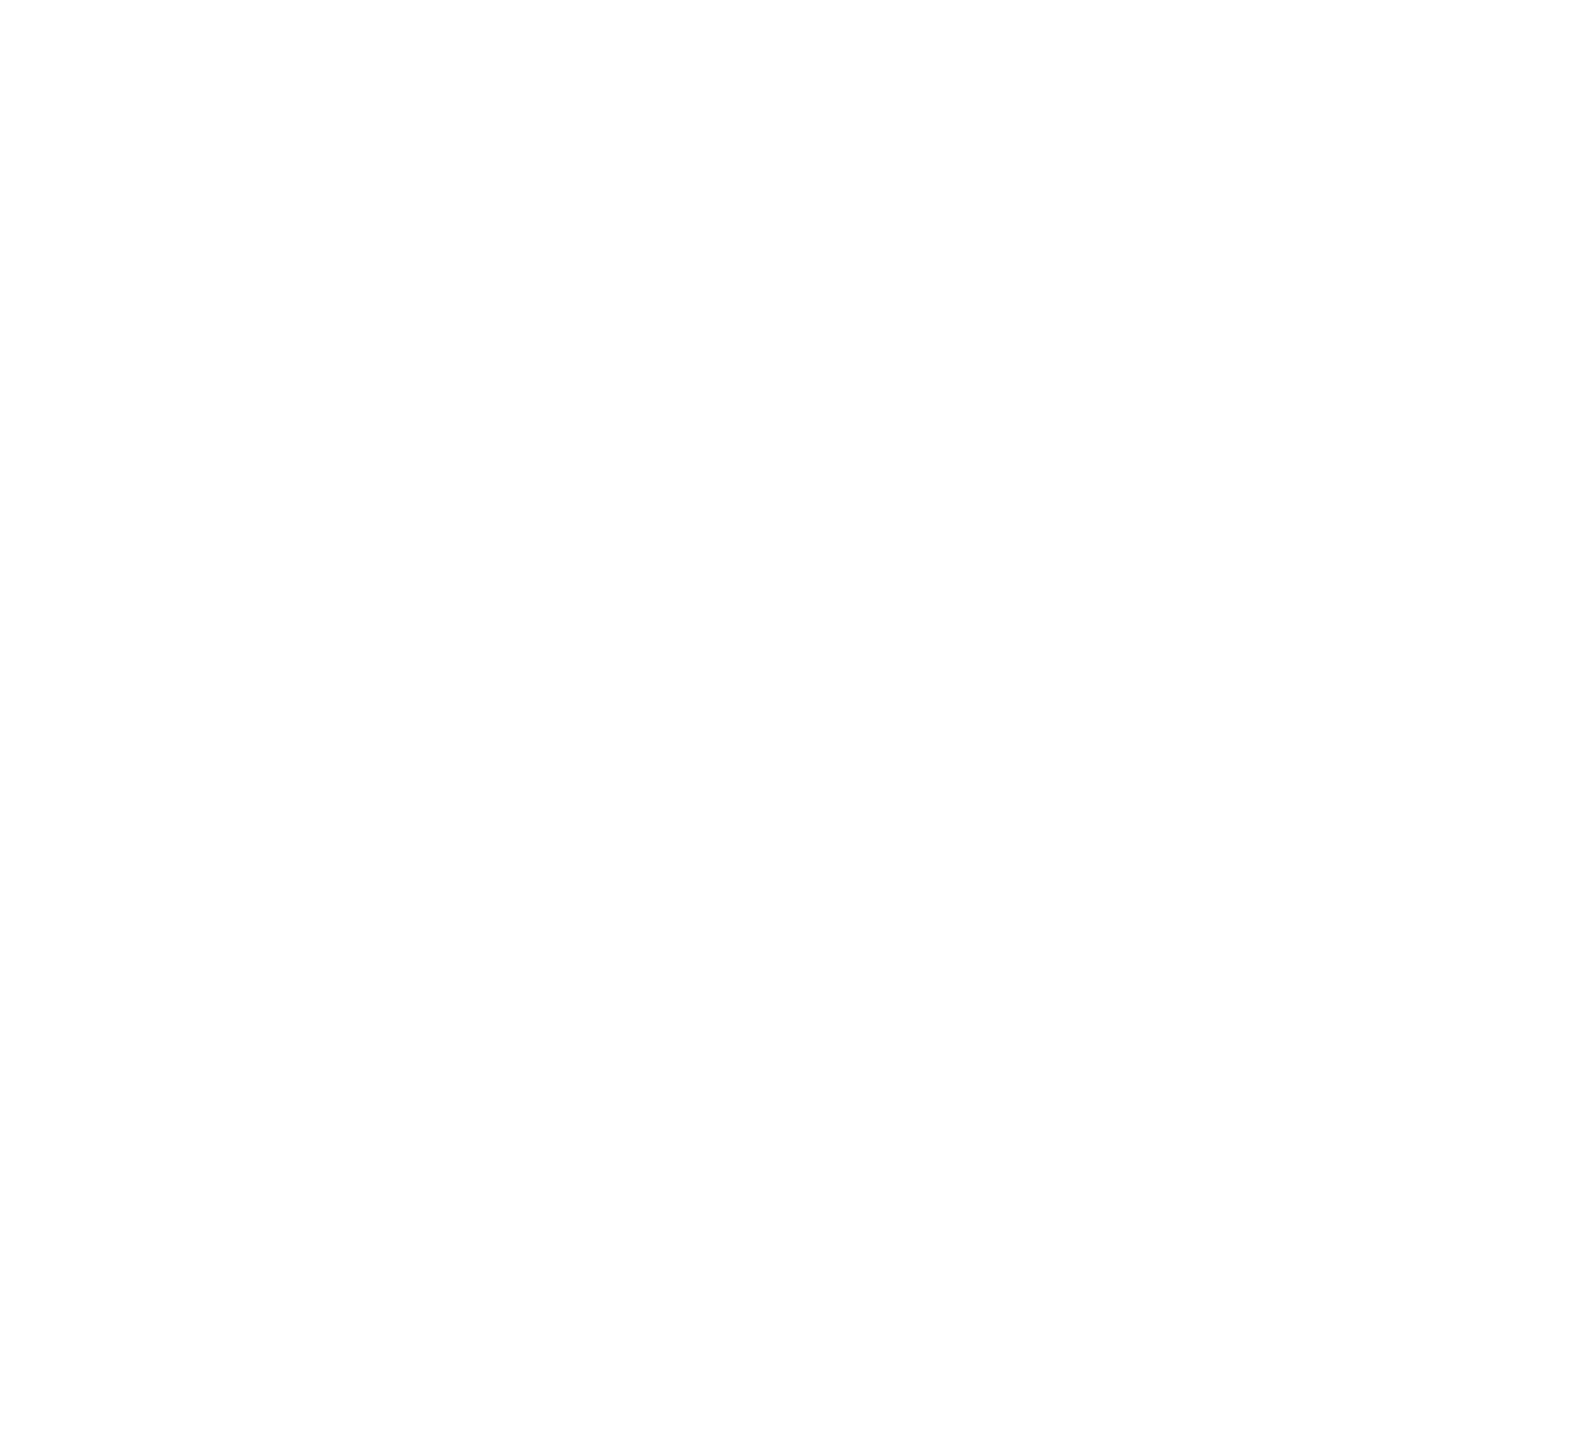 Telenor logo pour fonds sombres (PNG transparent)